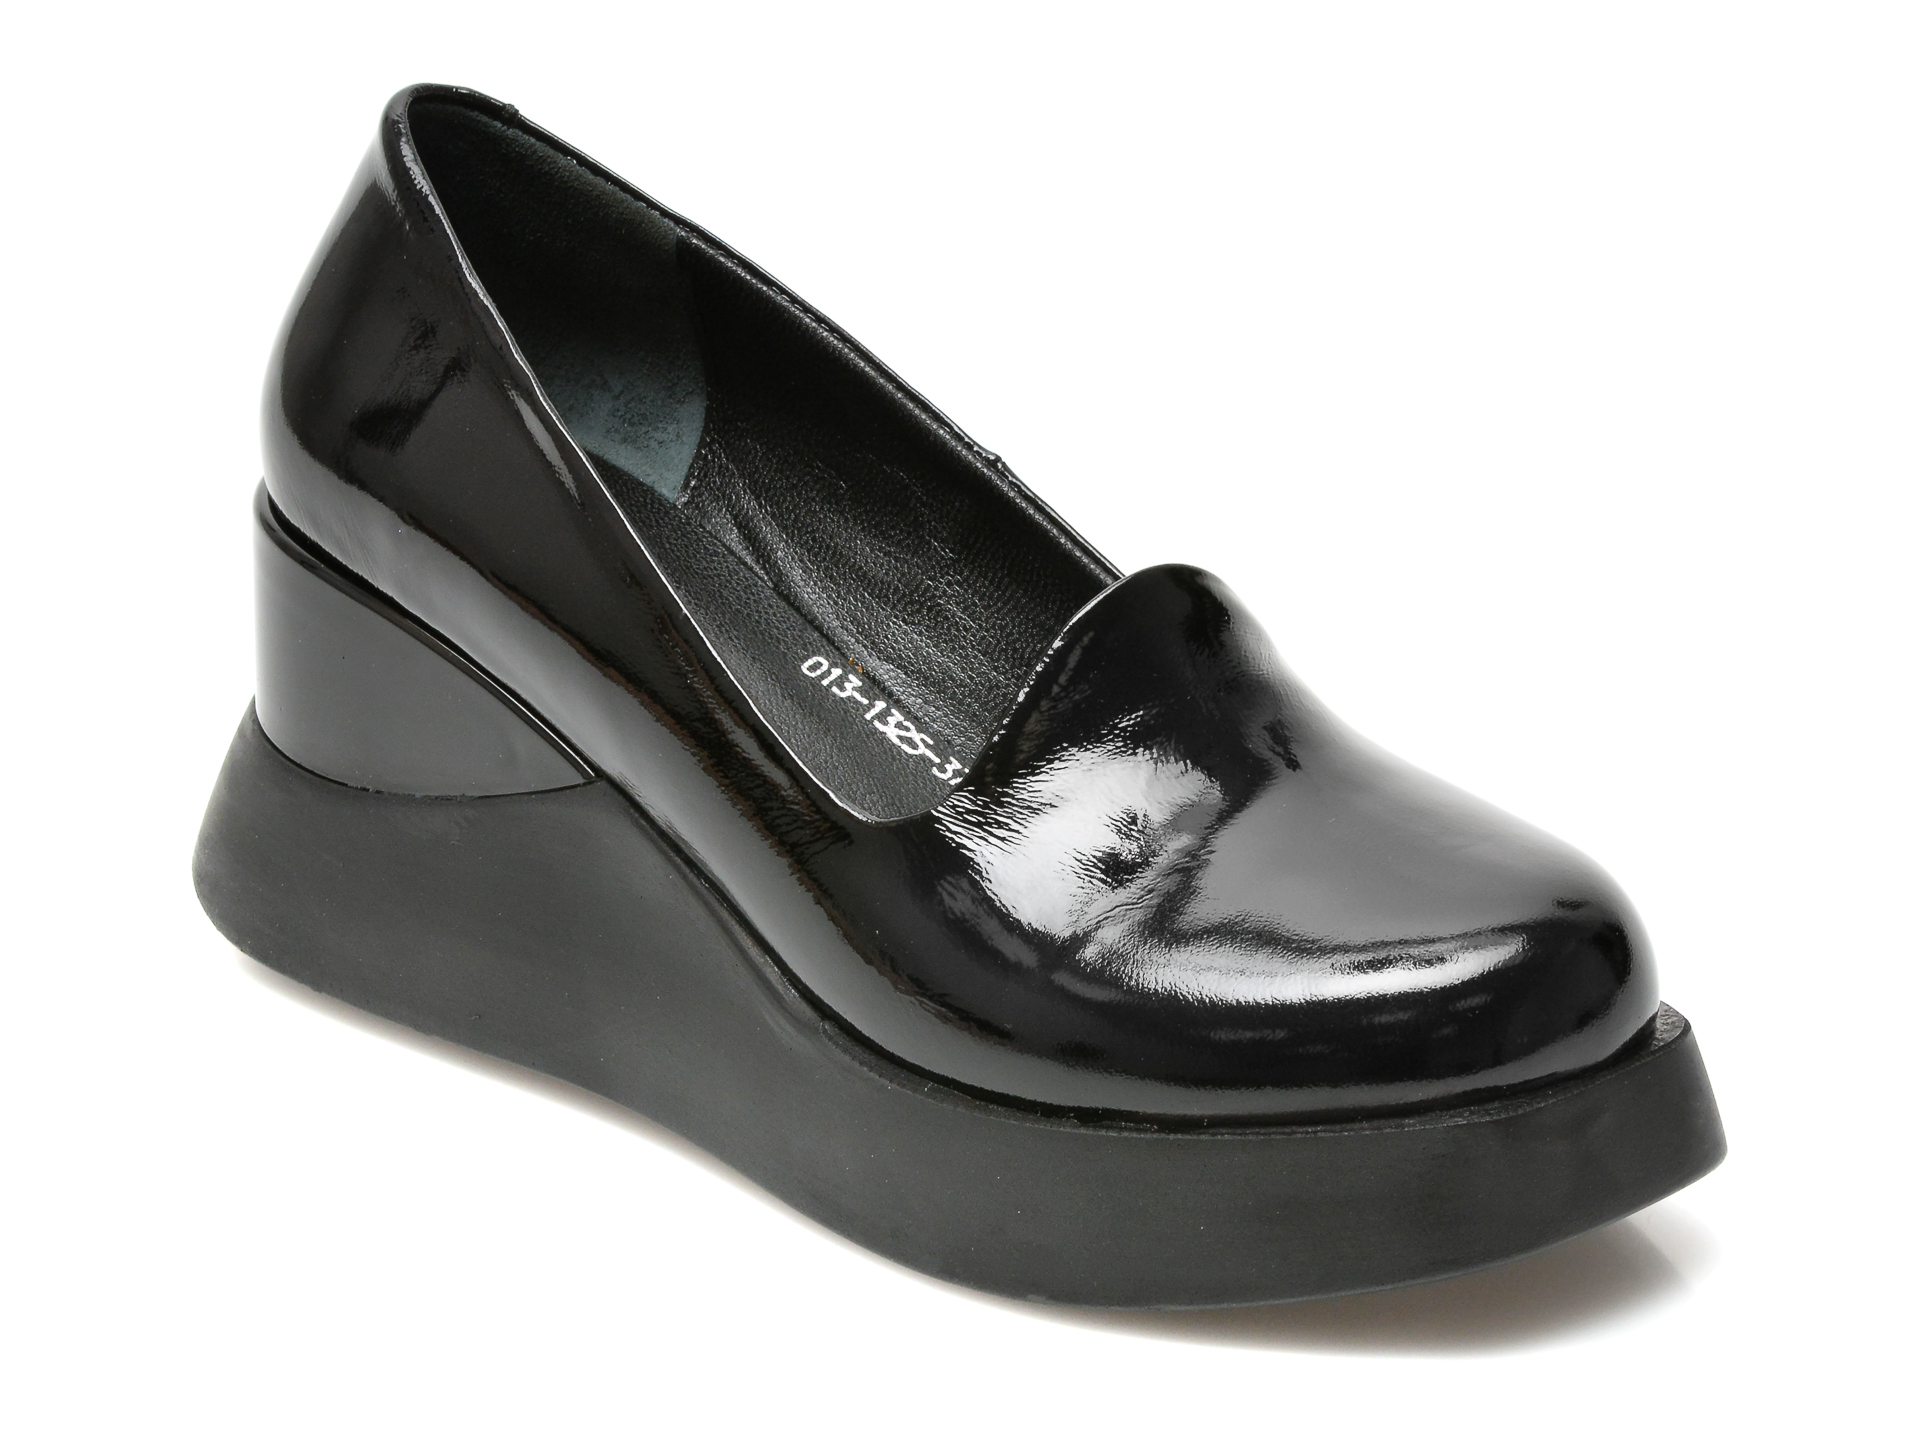 Pantofi FLAVIA PASSINI negri, 131325, din piele naturala lacuita Flavia Passini